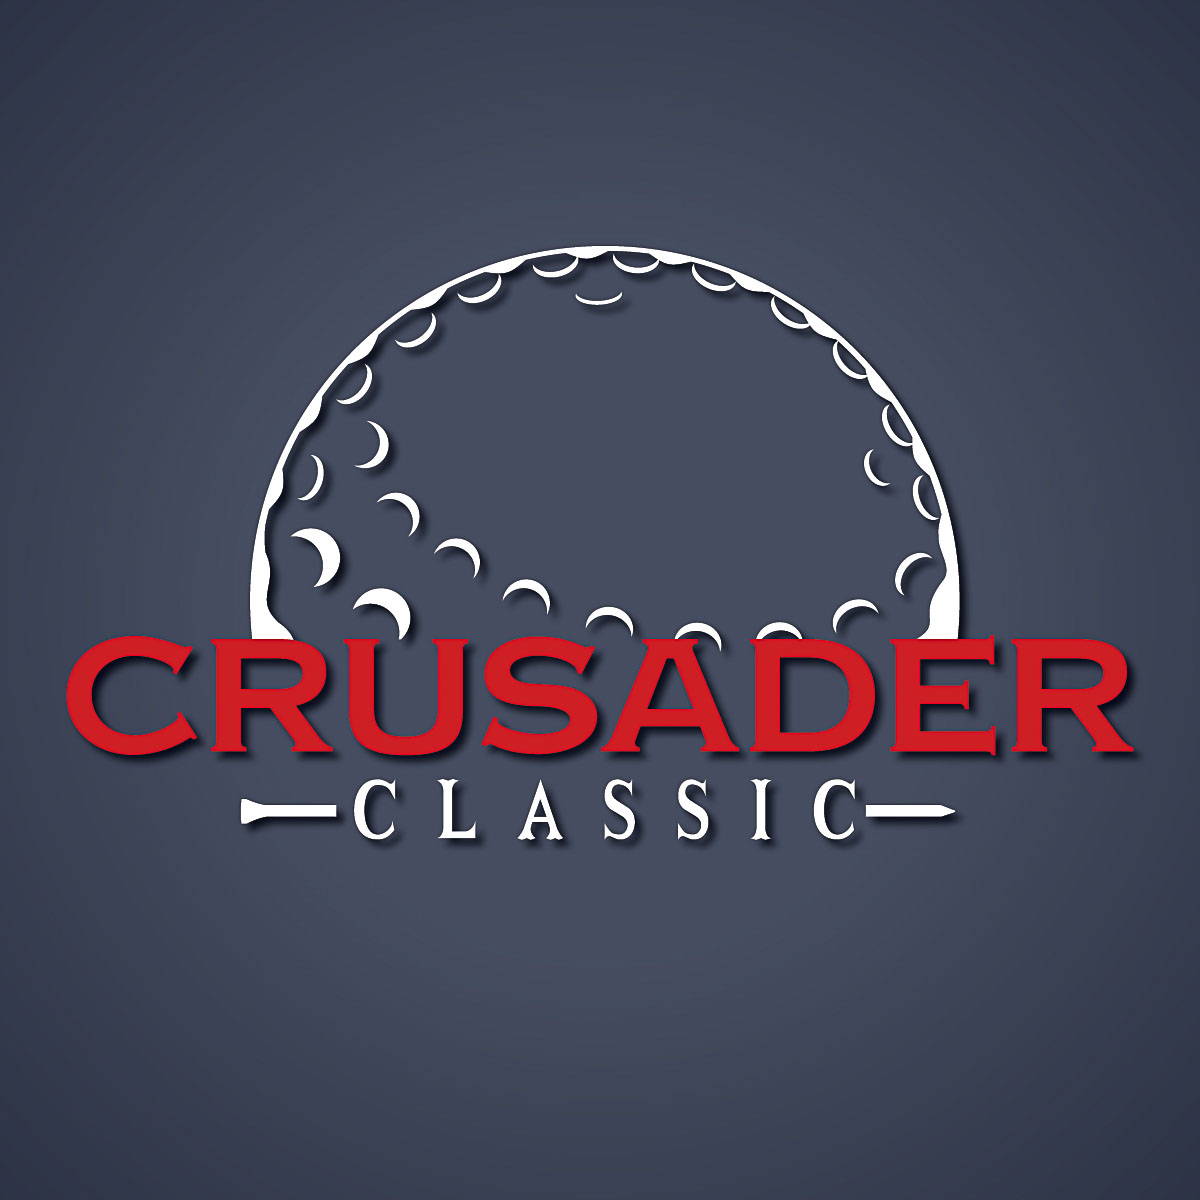 Crusader Classic